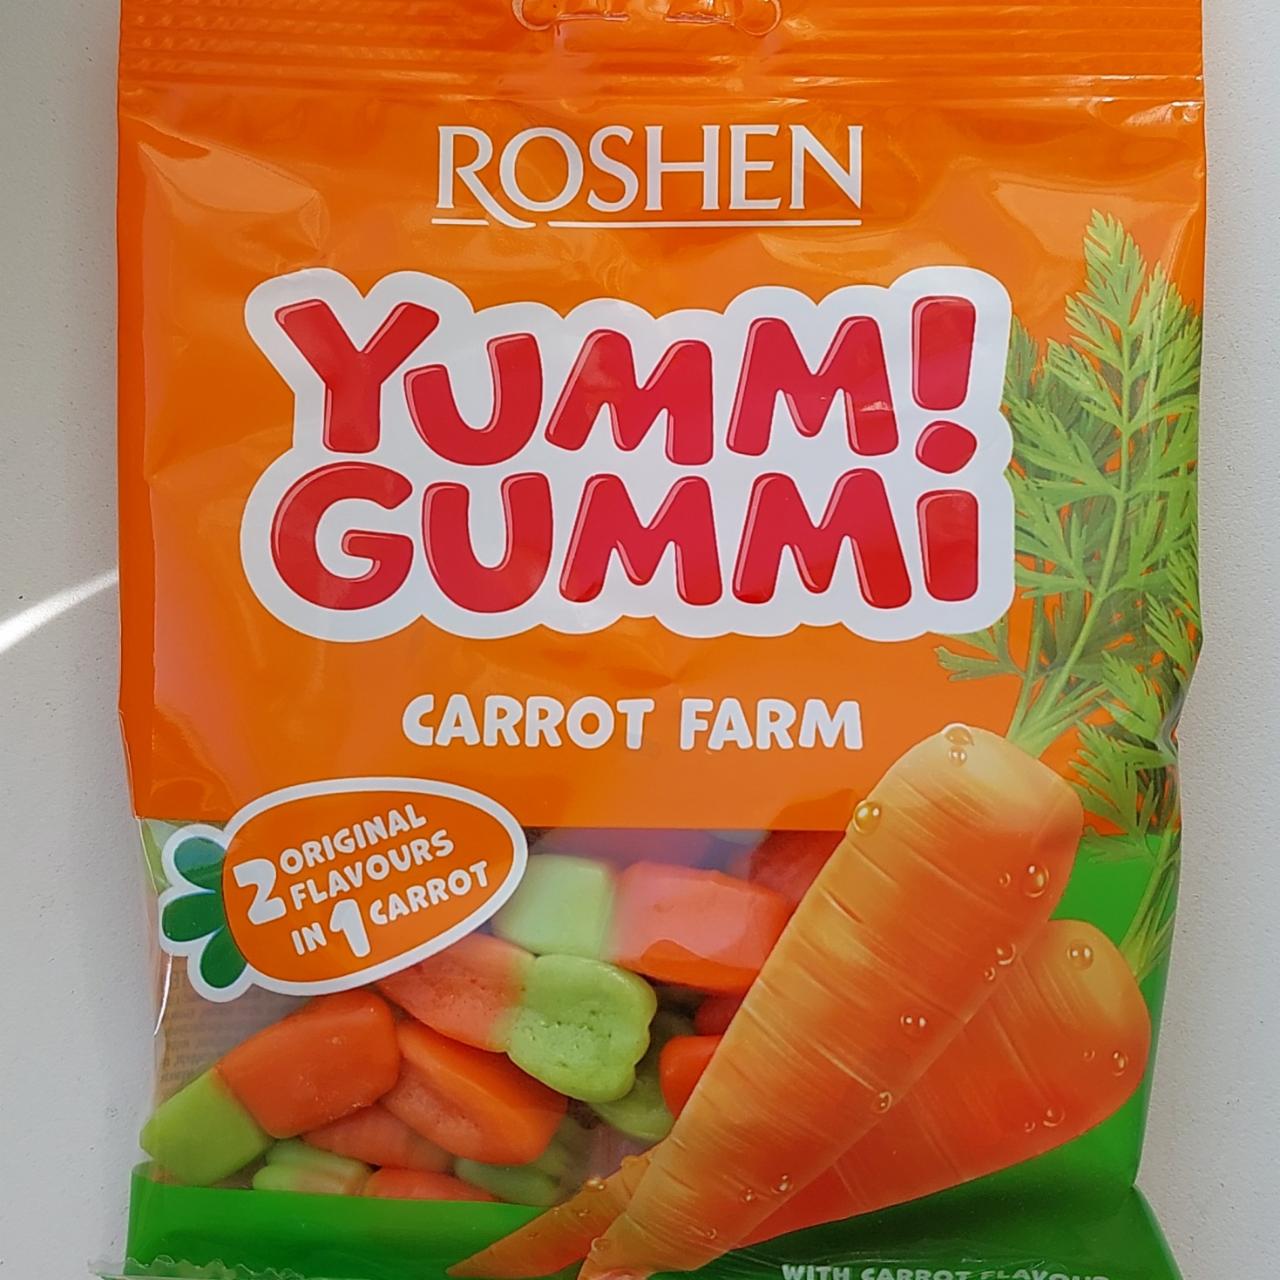 Фото - Конфеты желейные Carrot farm Yummi Gummi Roshen